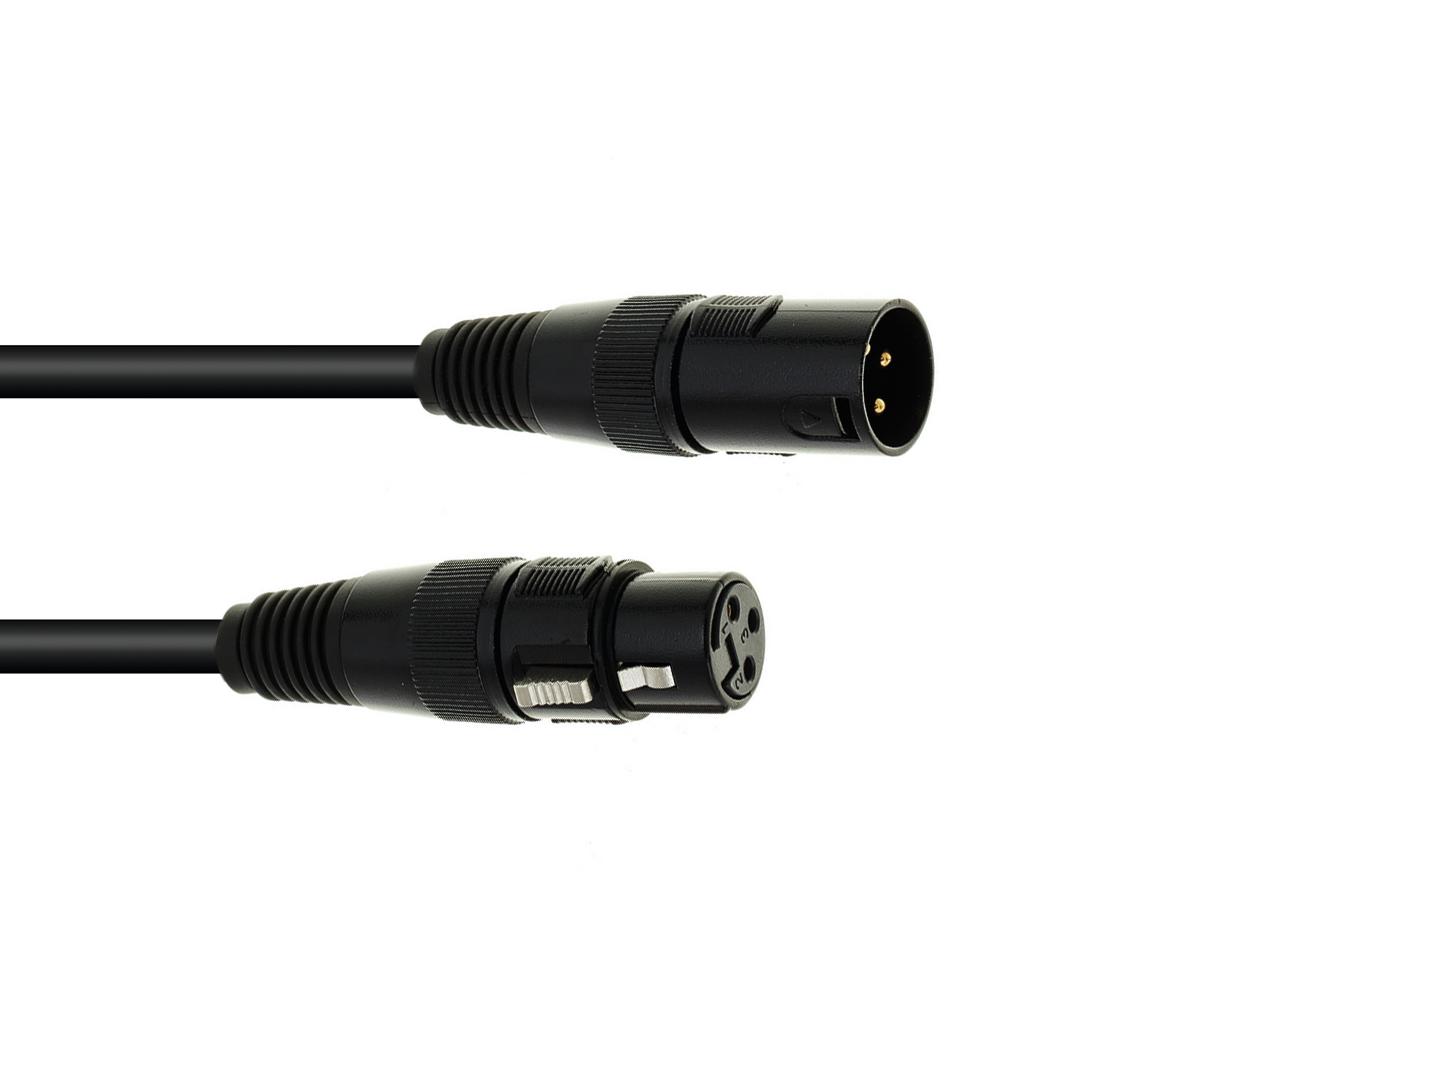 DMX Kabel XLR 3pol 5m schwarz - Steuerleitung für Licht